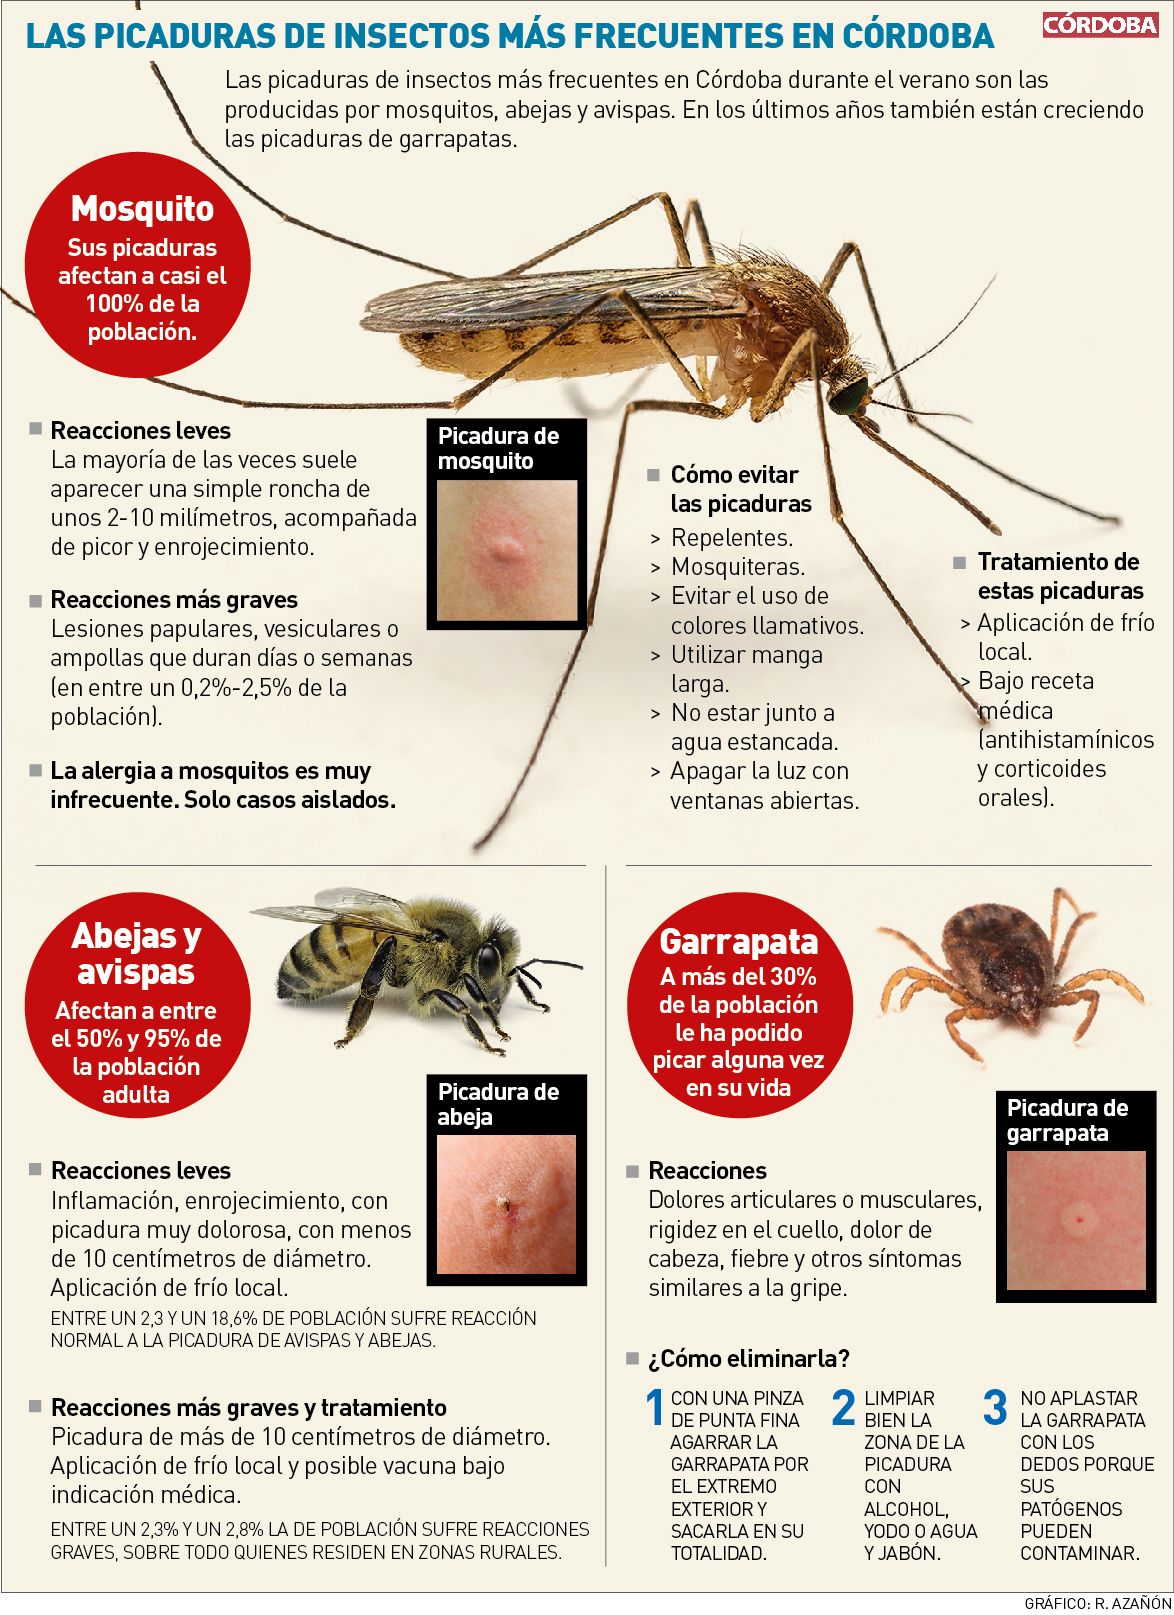 Las picaduras de insectos más frecuentes en Córdoba.